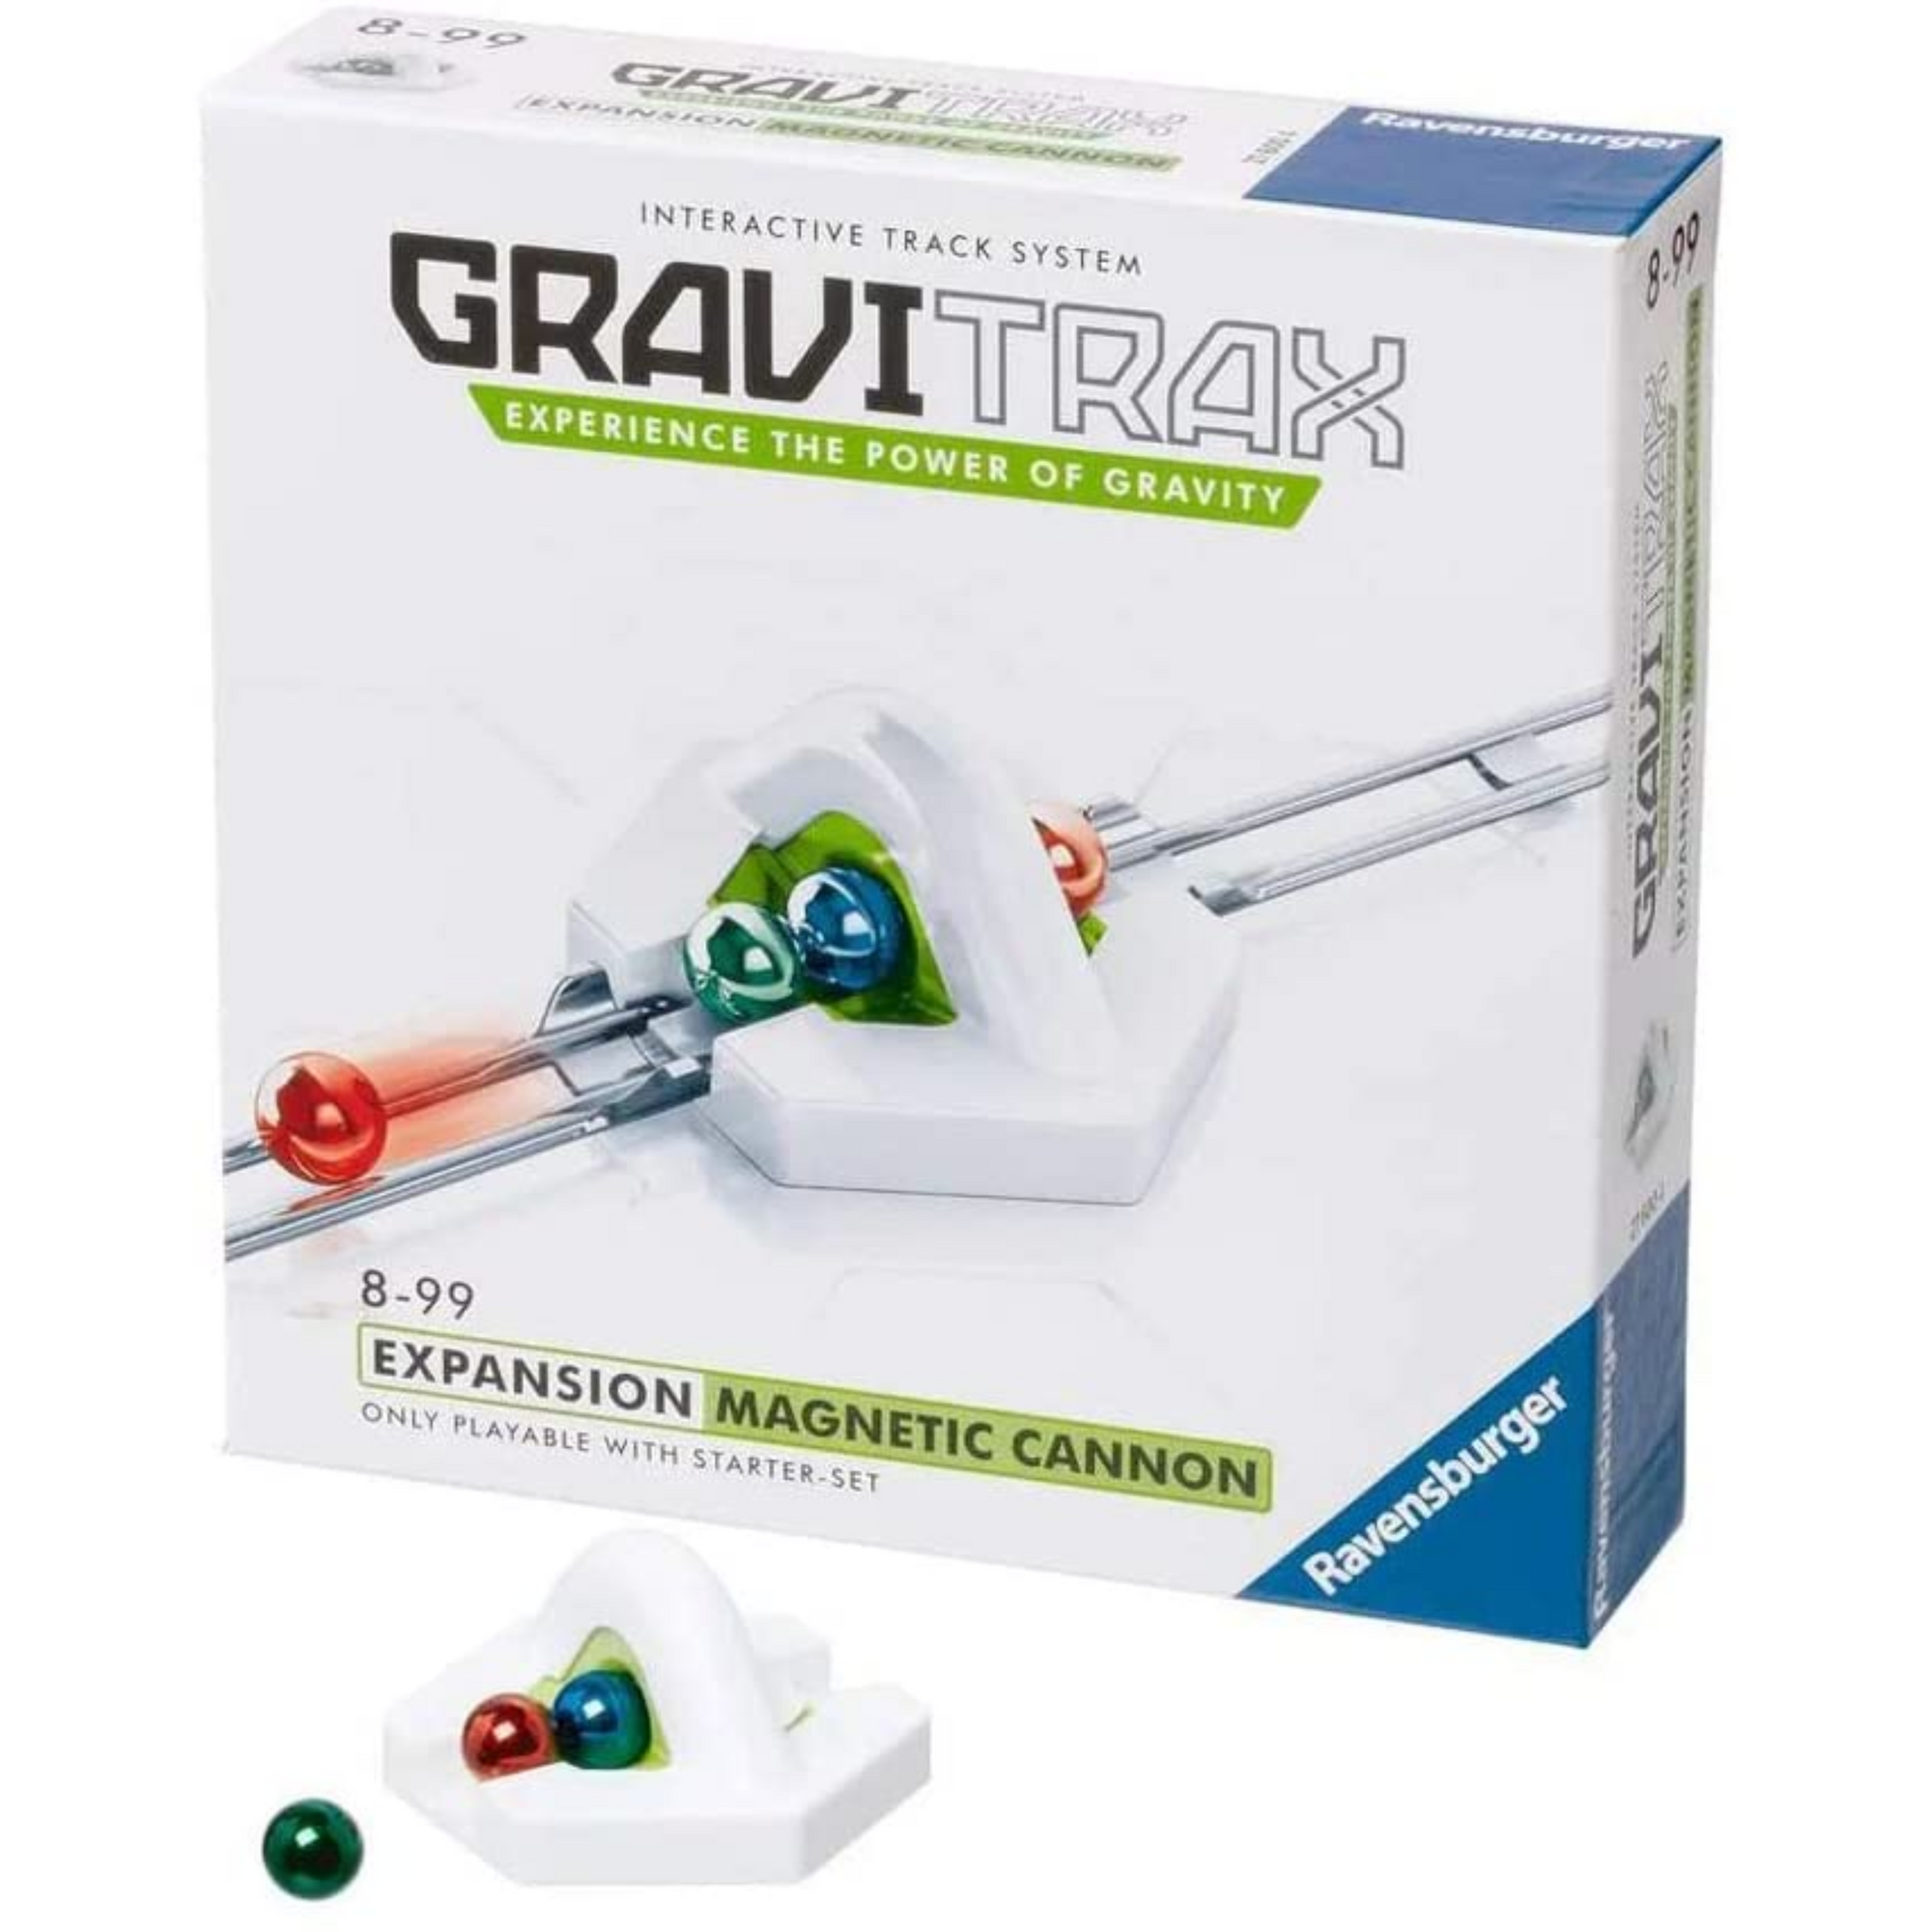 Gravitrax canon magnetico expansión